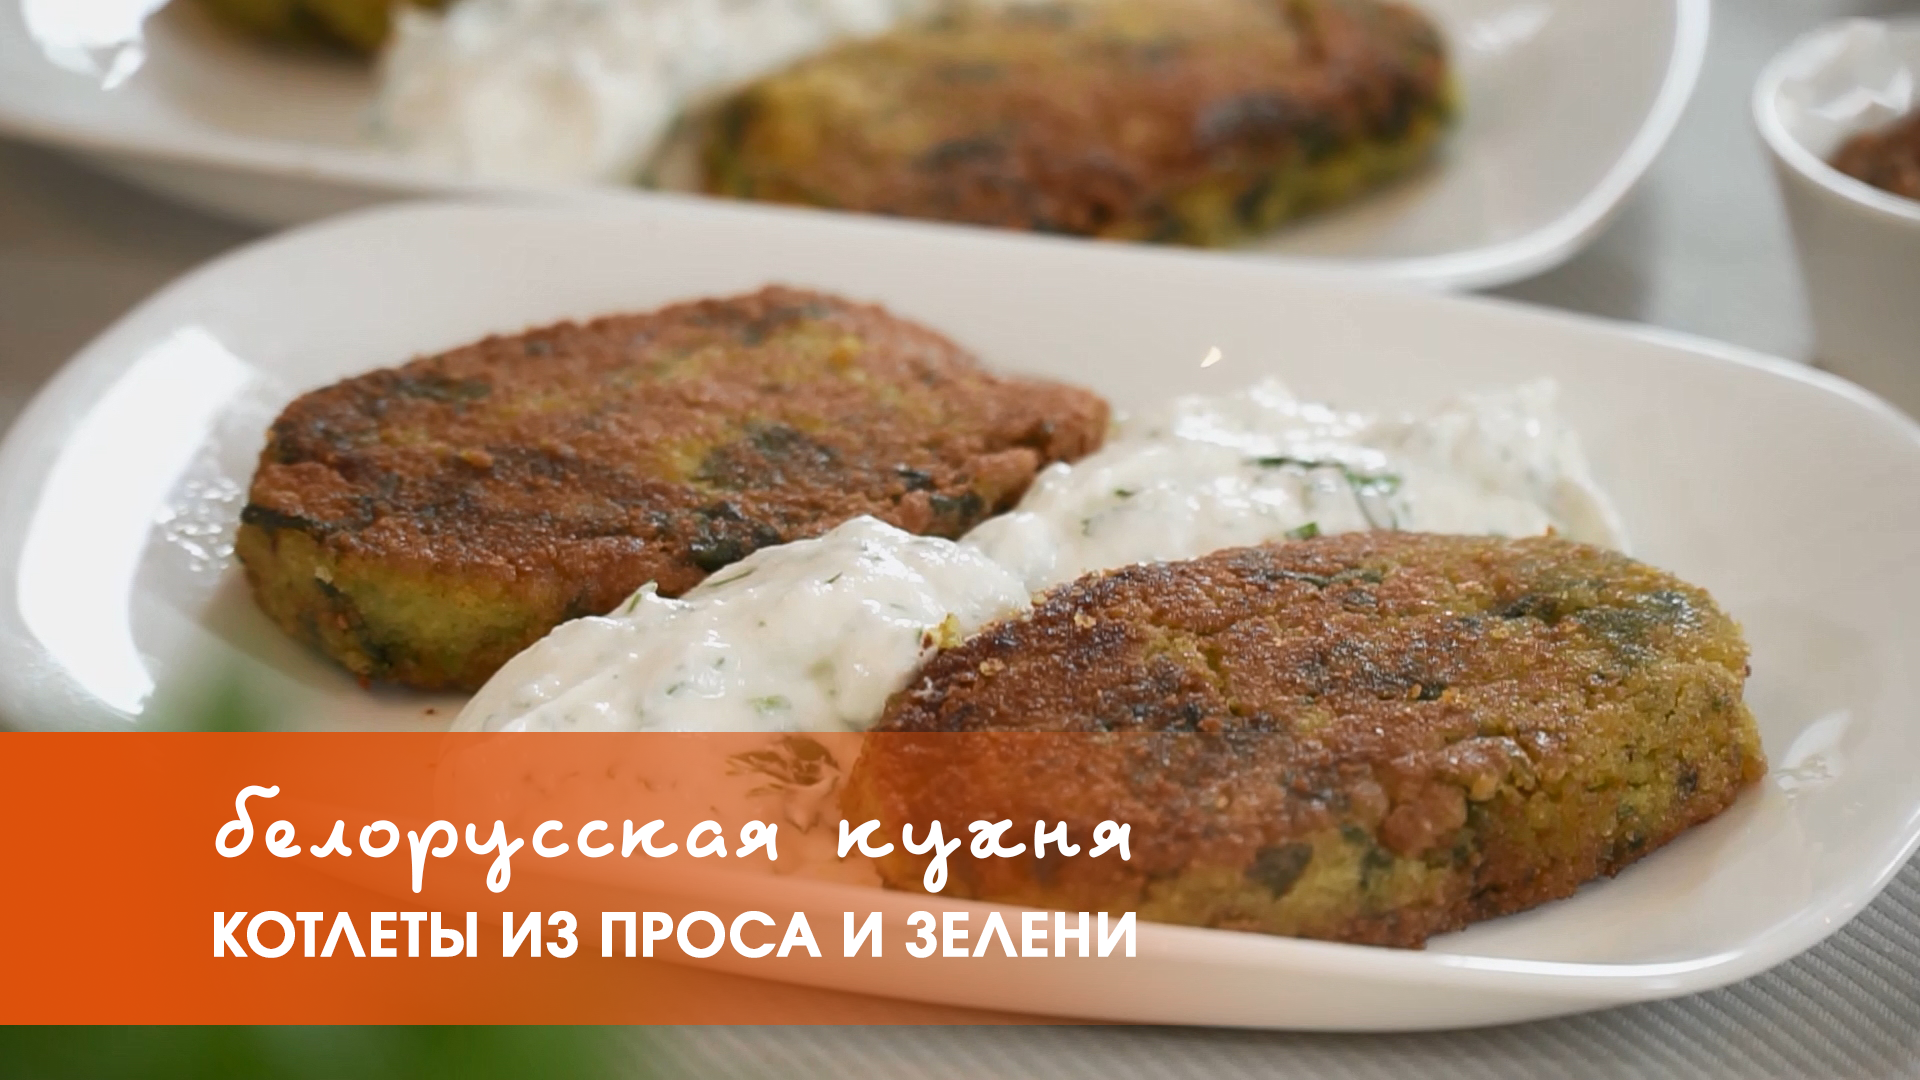 Белорусская кухня: котлеты из проса и зелени